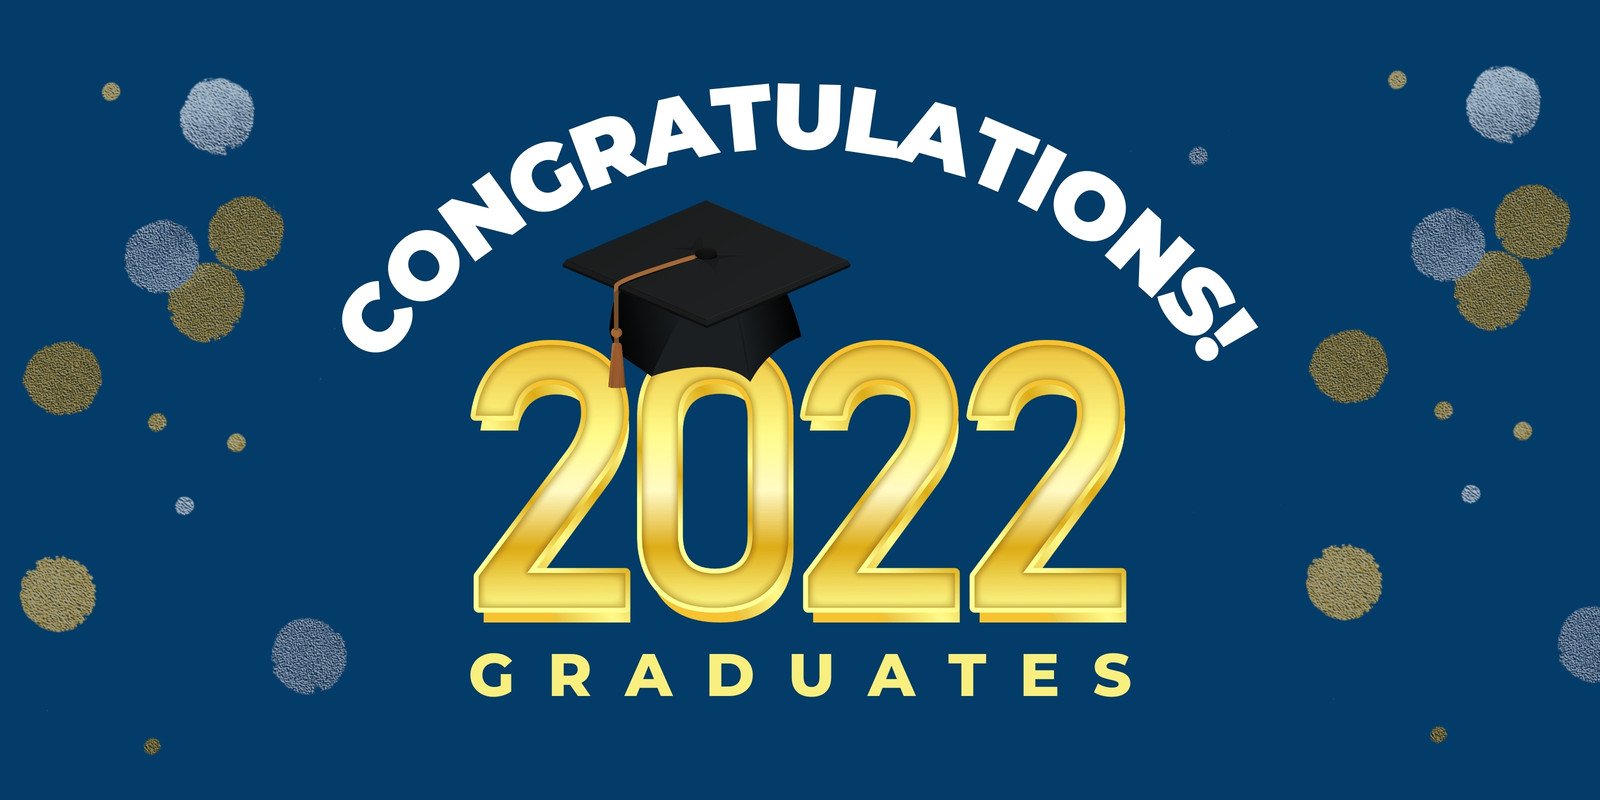 graduation-decorations-2021-congrats-grad-banner-graduation-photography